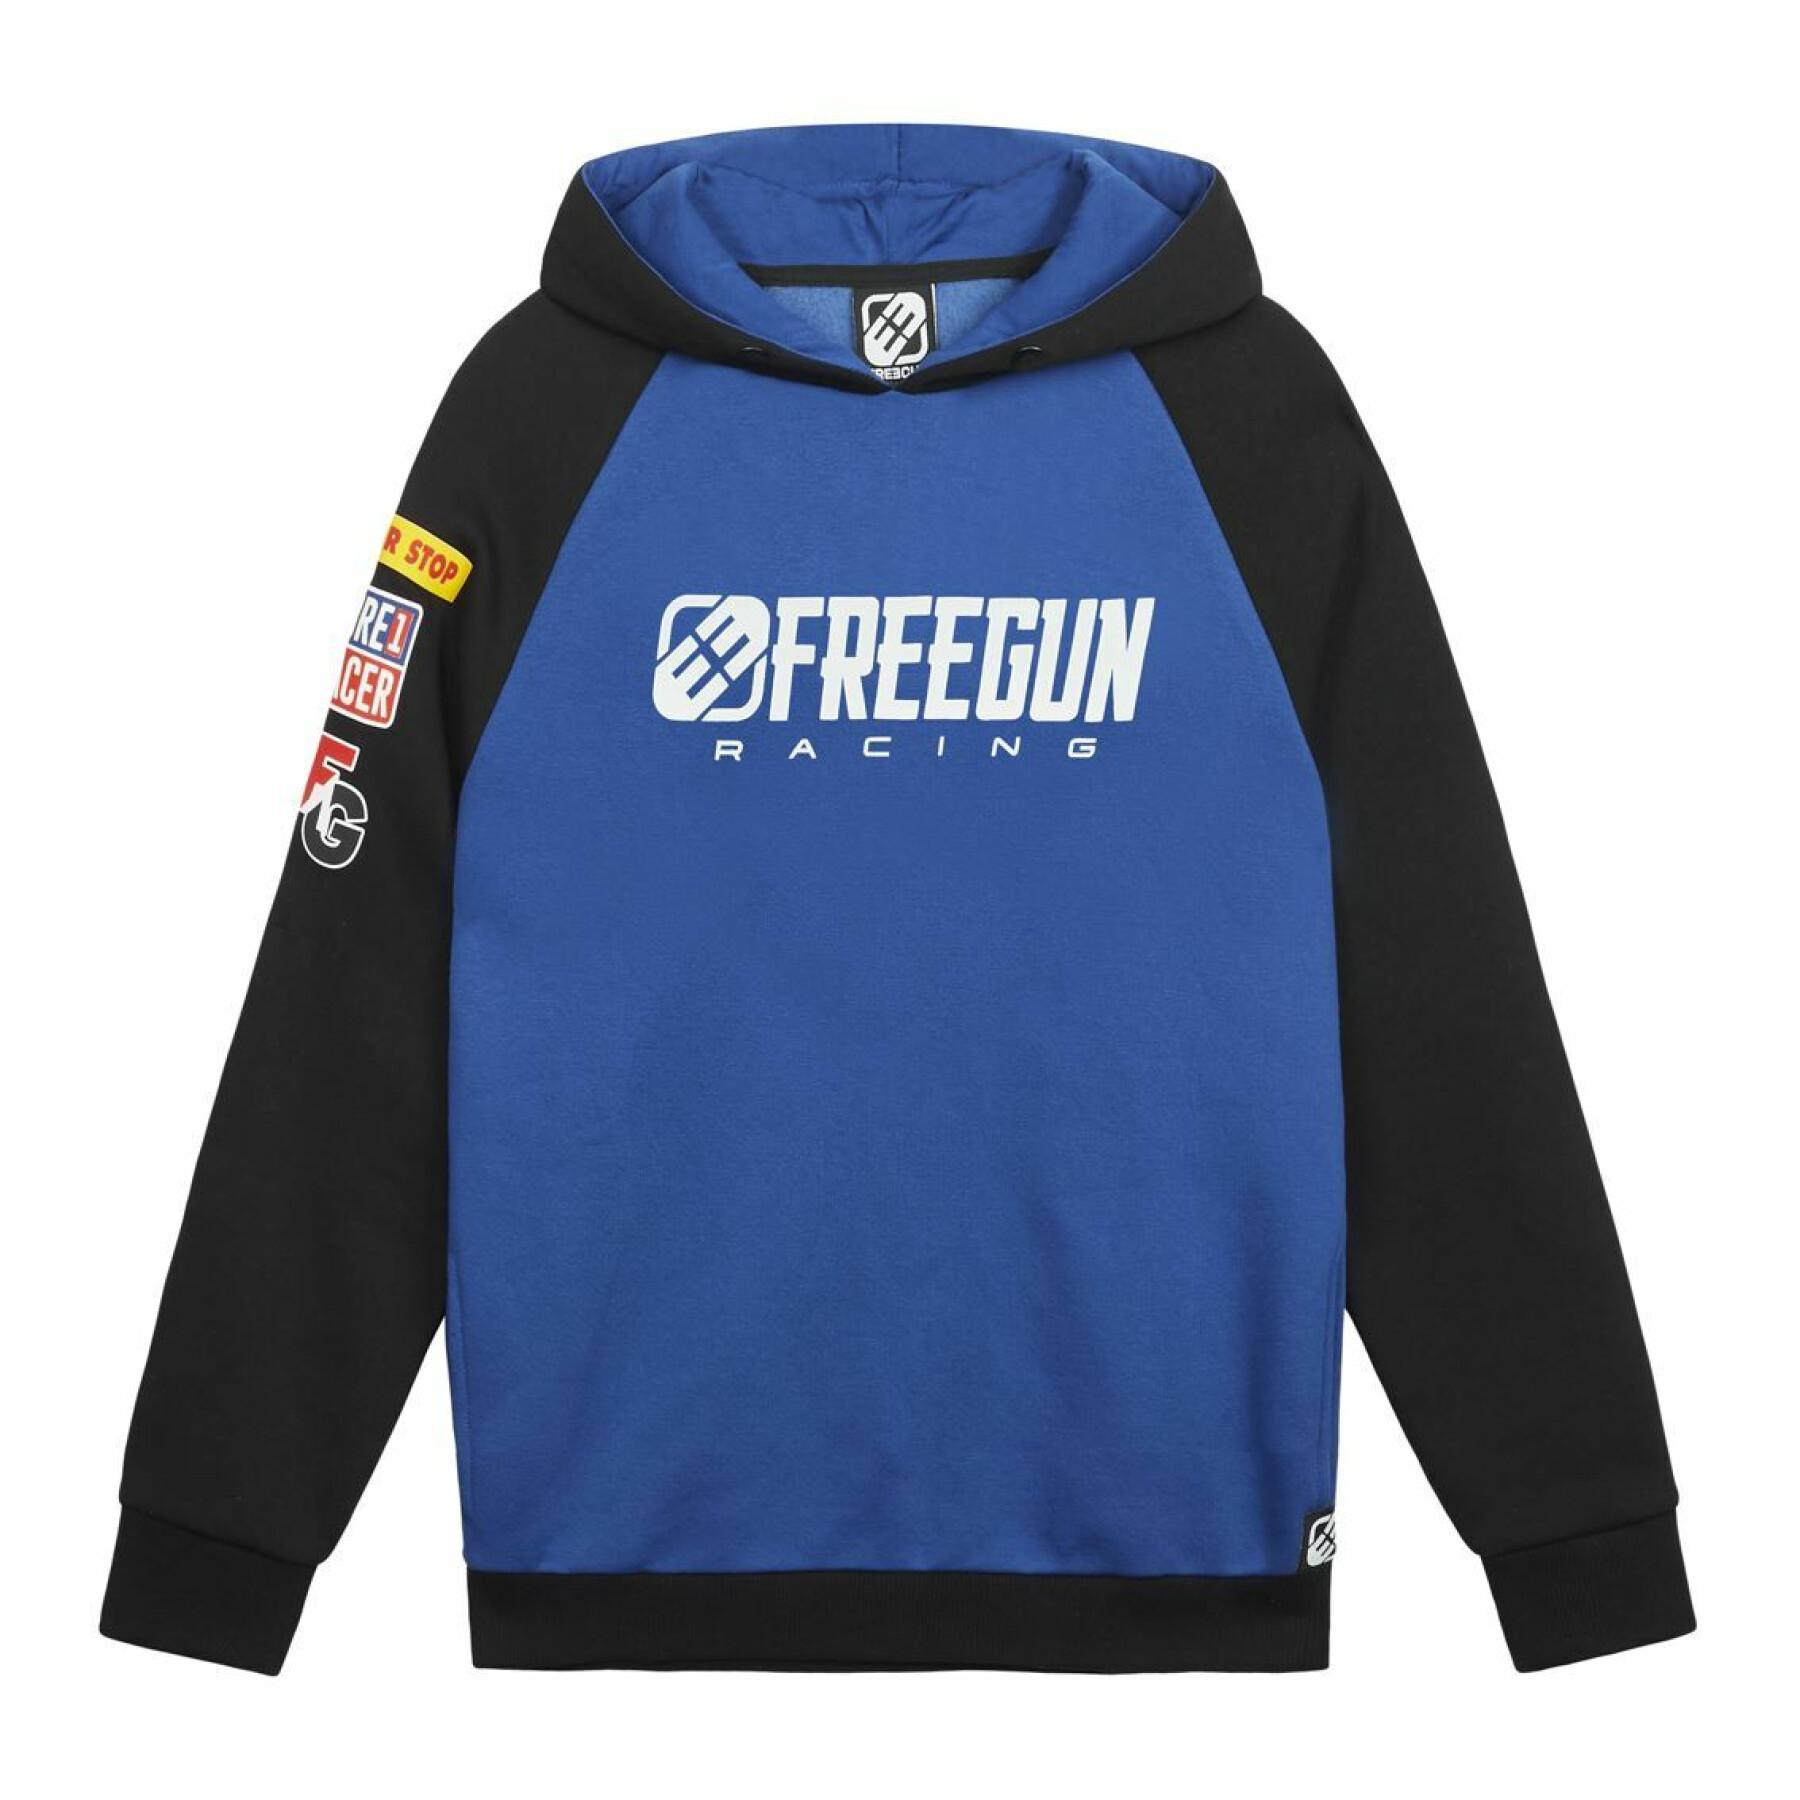 Camisola com capuz para criança Freegun Racing